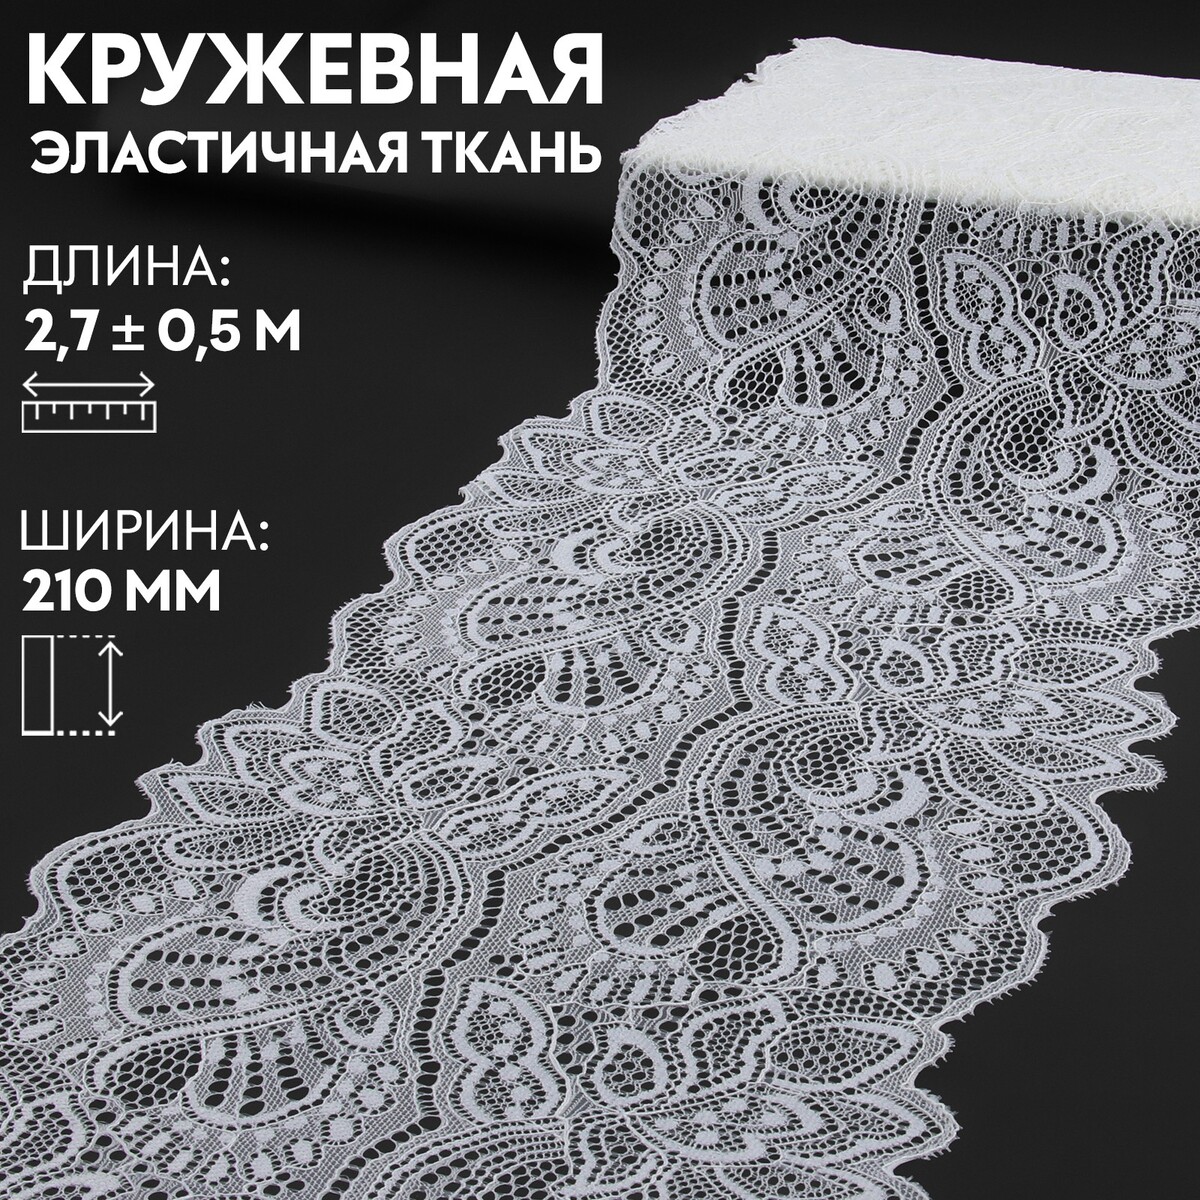 Кружевная эластичная ткань, 210 мм × 2,7 ± 0,5 м, цвет белый